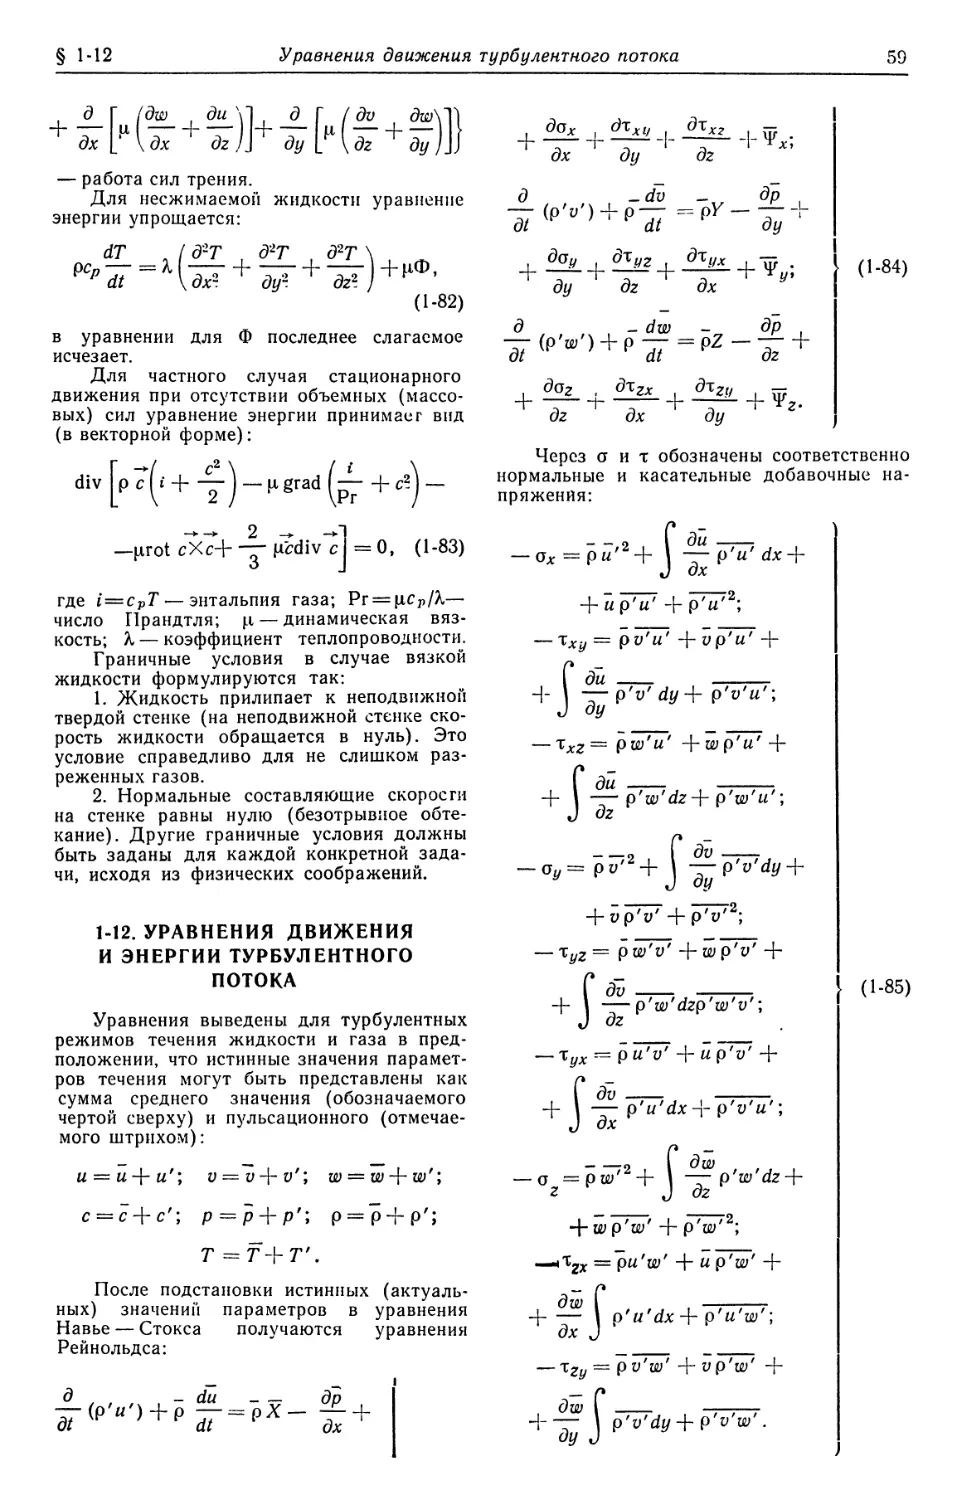 1-12. Уравнения движения и энергии турбулентного потока